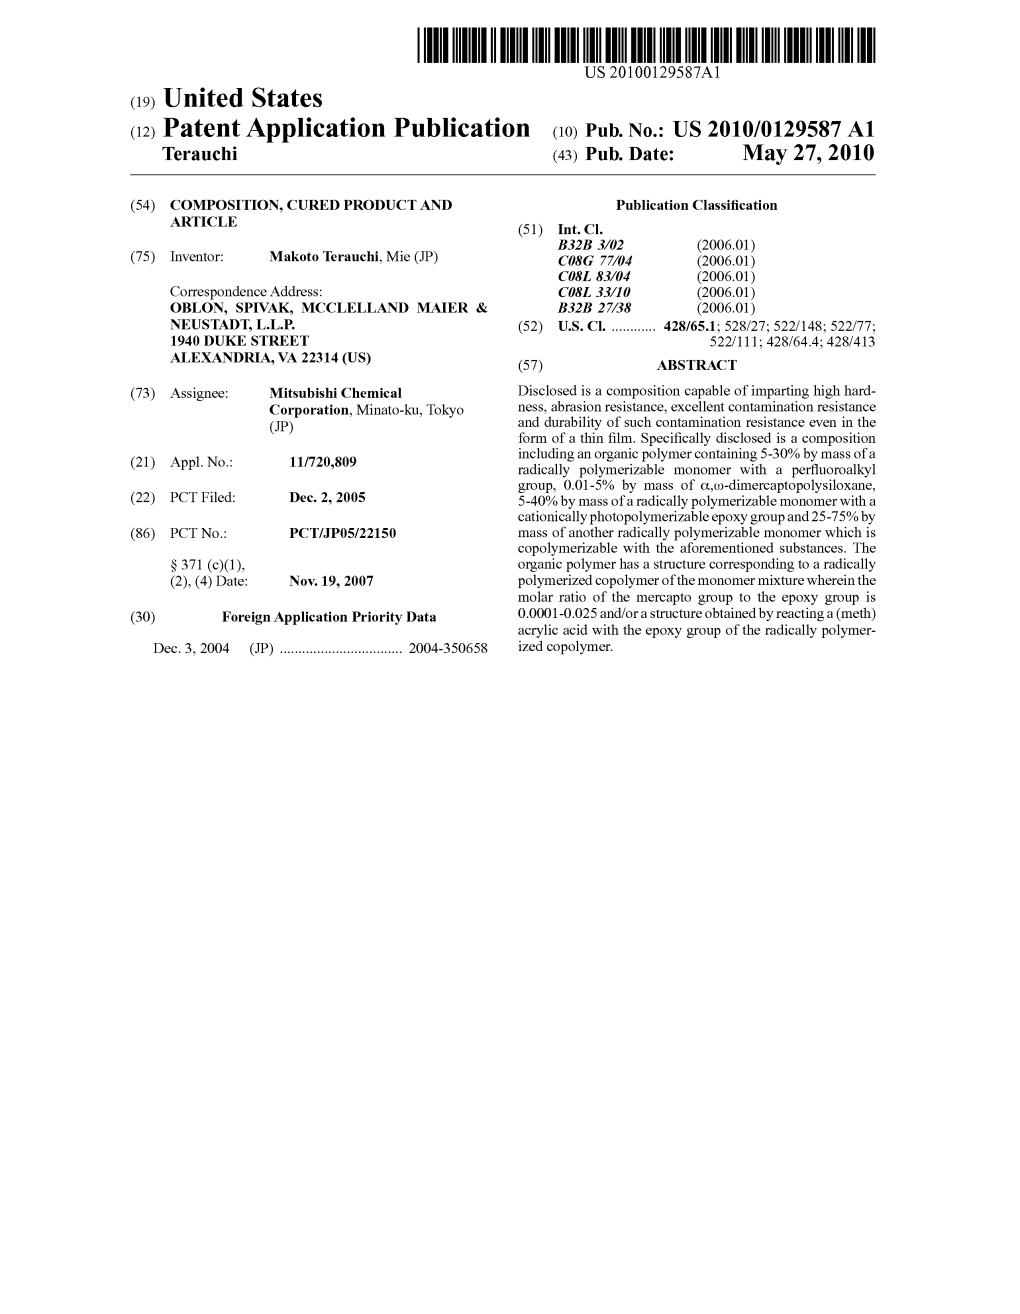 (12) Patent Application Publication (10) Pub. No.: US 2010/0129587 A1 Terauchi (43) Pub